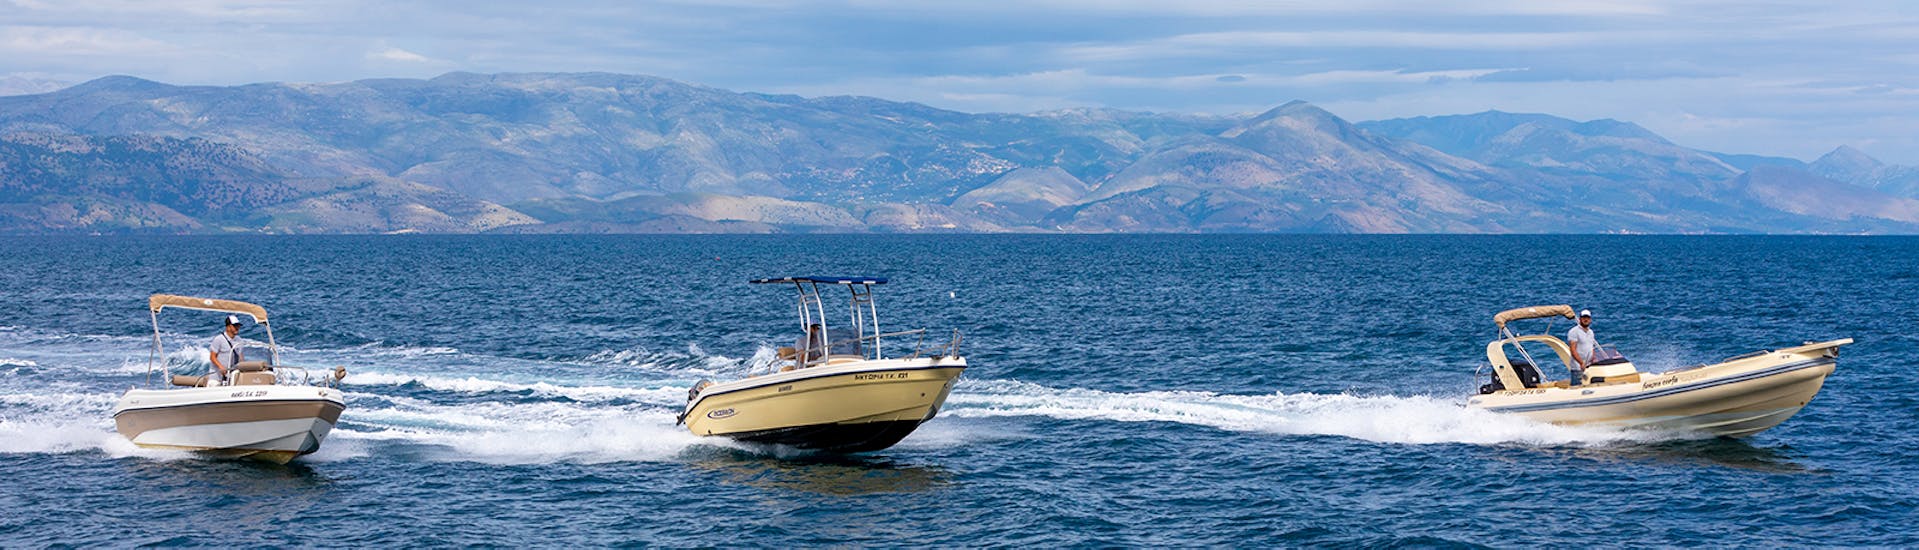 Partecipate a una gita in barca privata intorno a Corfù circondati da acque blu, durante un'attività fornita da FunSea Corfù.